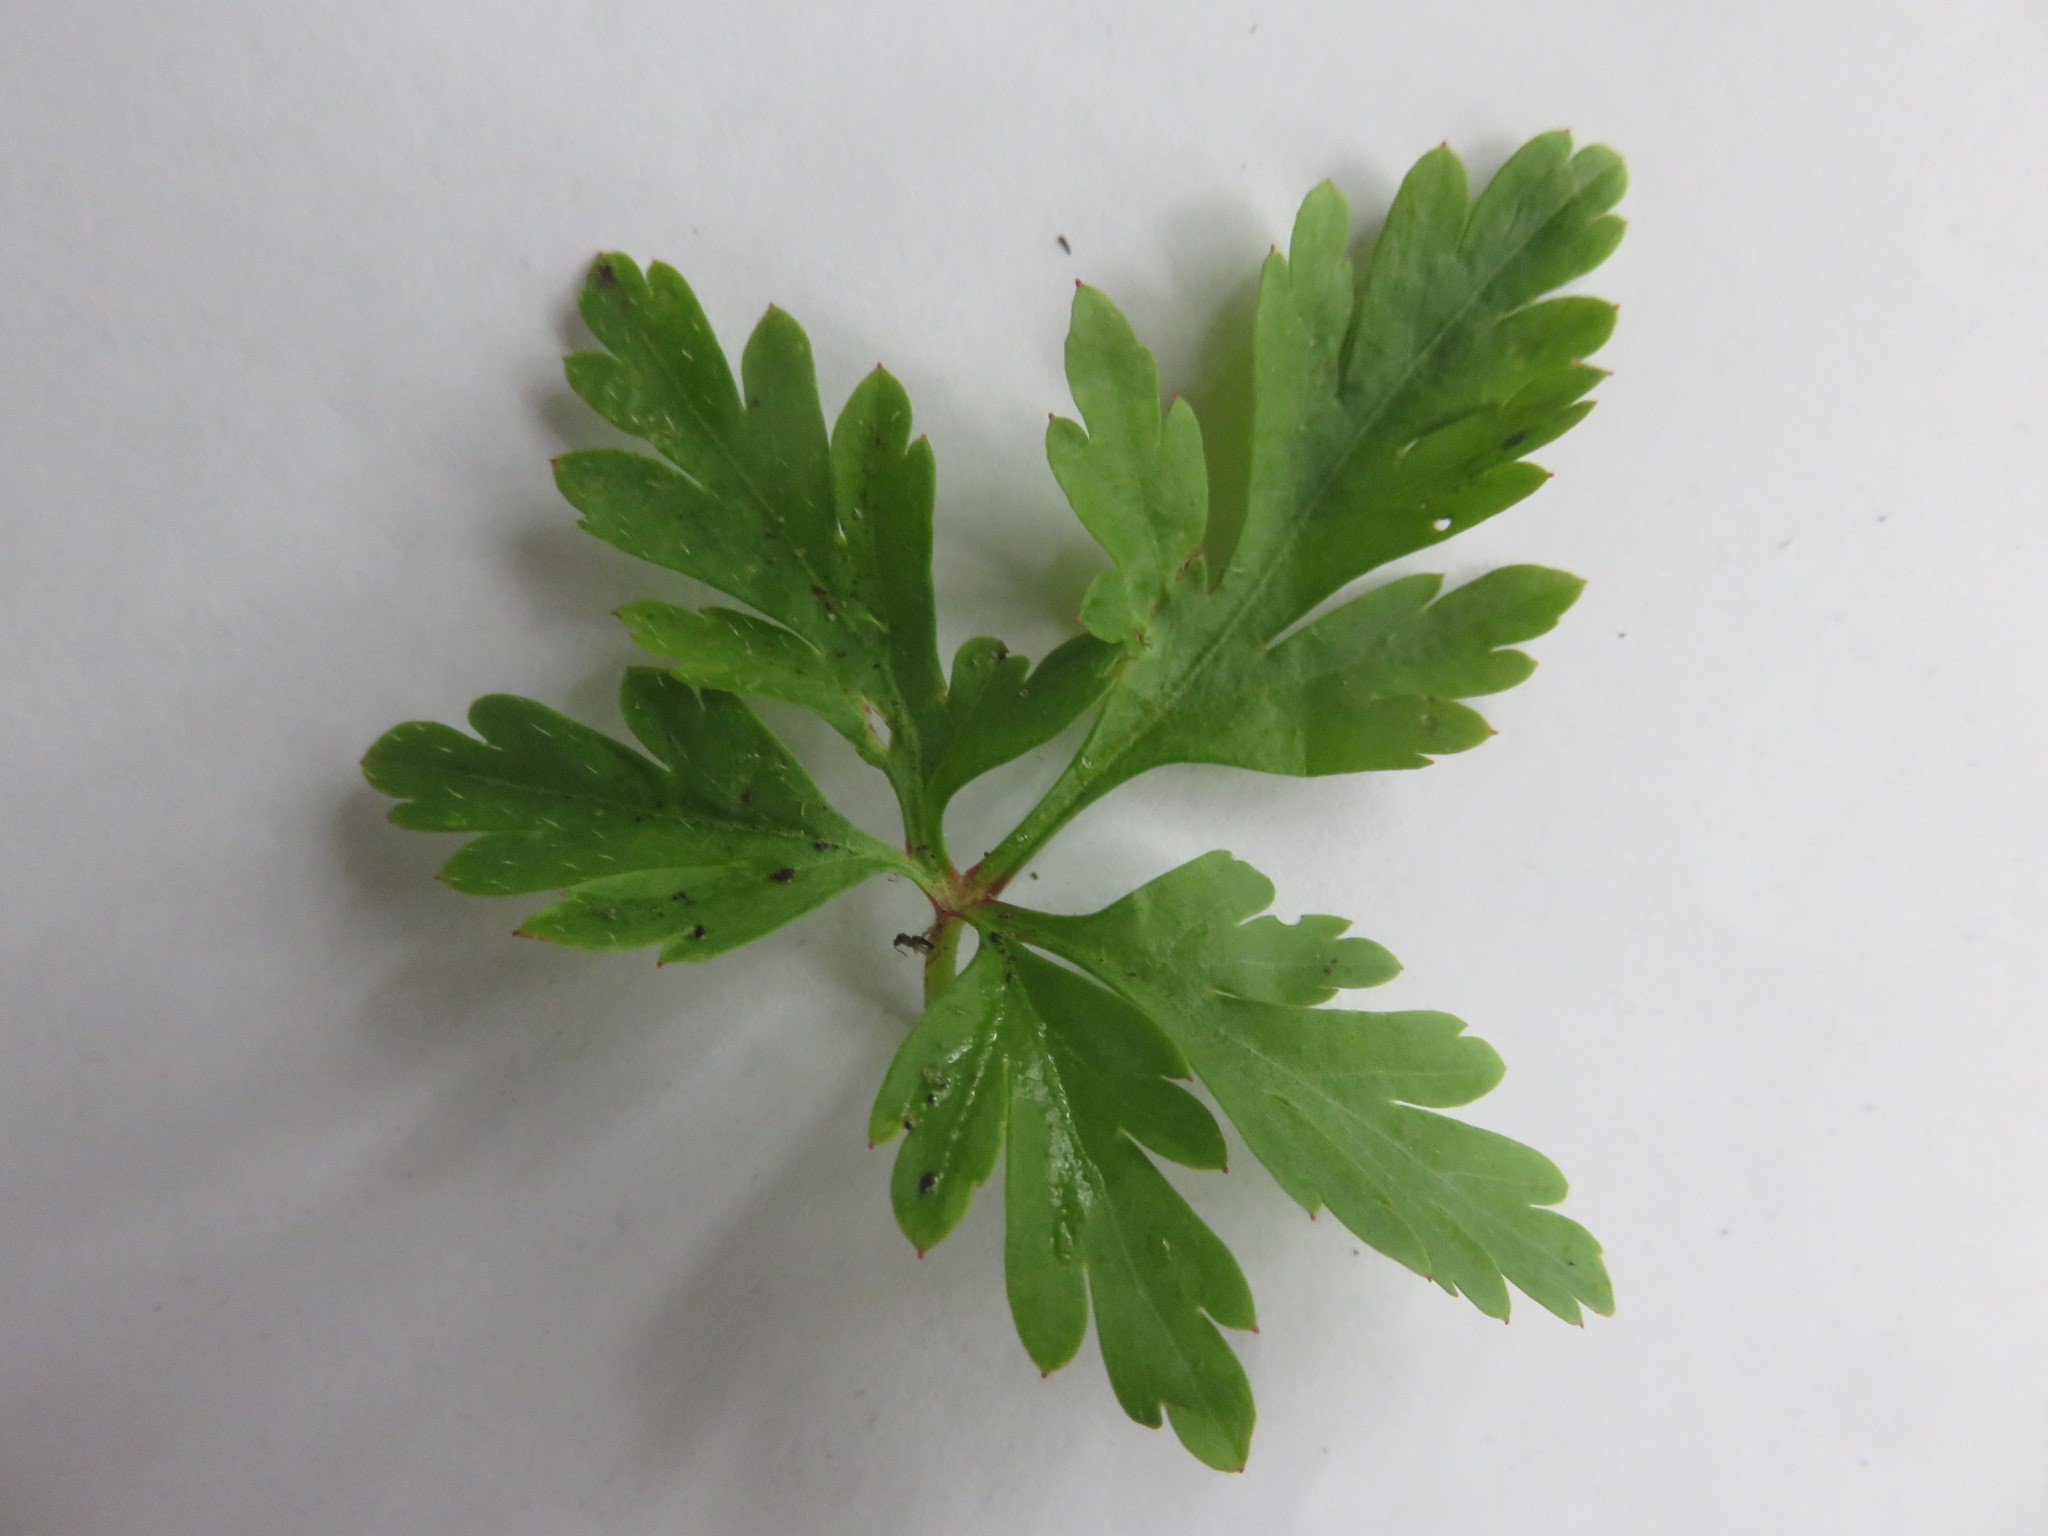 the leaf is very like Geranium robertianum